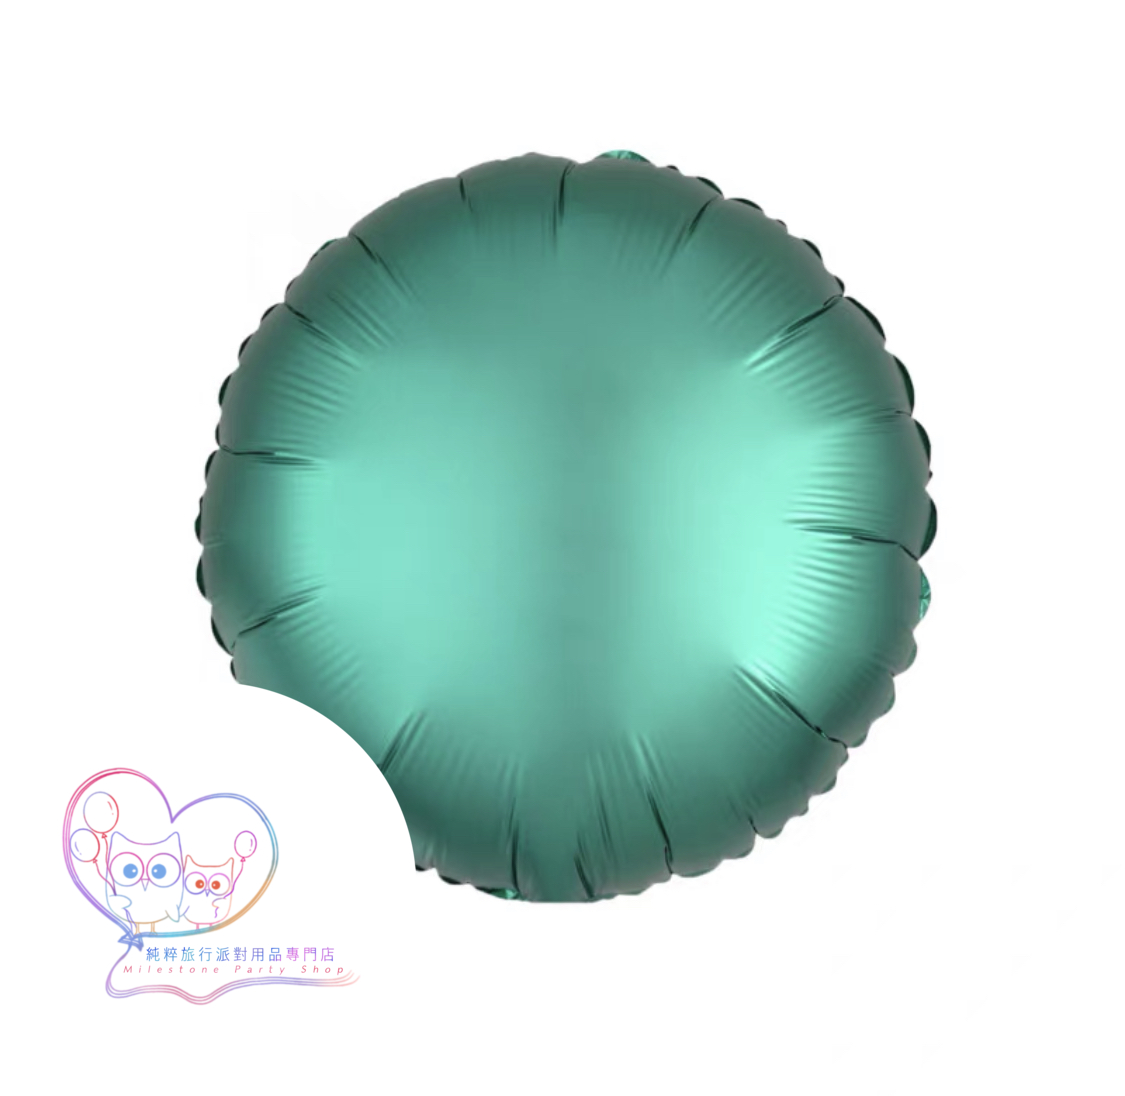 18吋圓形鋁膜氣球 (磨砂綠色) 18OM4